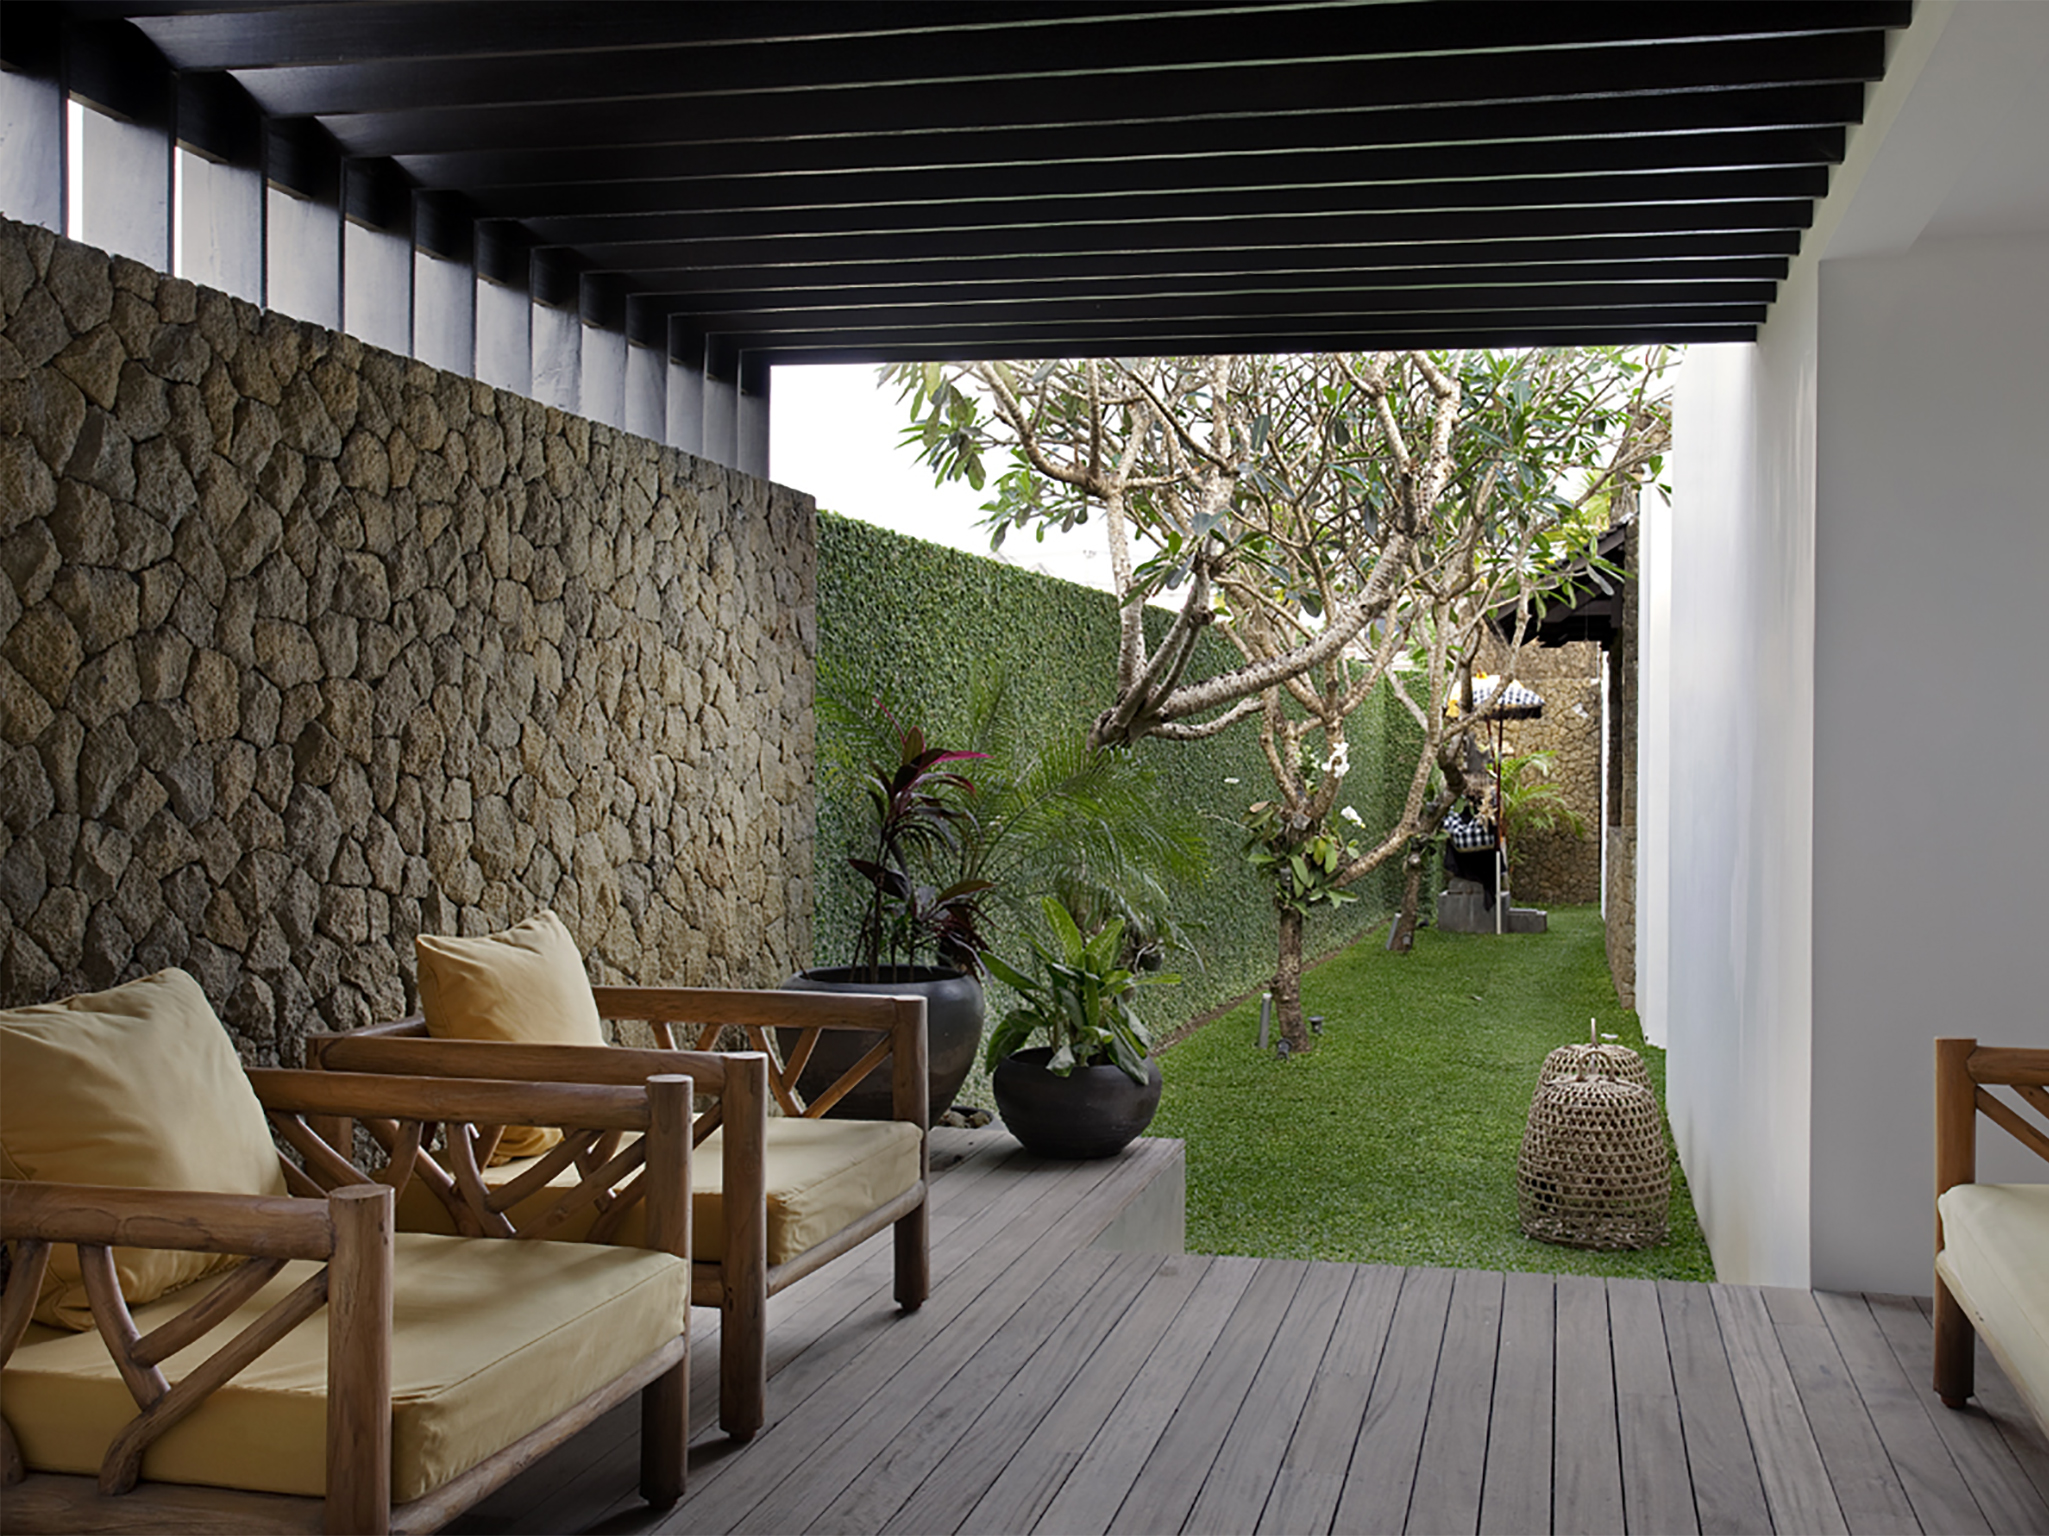  Villa Hana - Lounge II - Villa Hana, Canggu, Bali